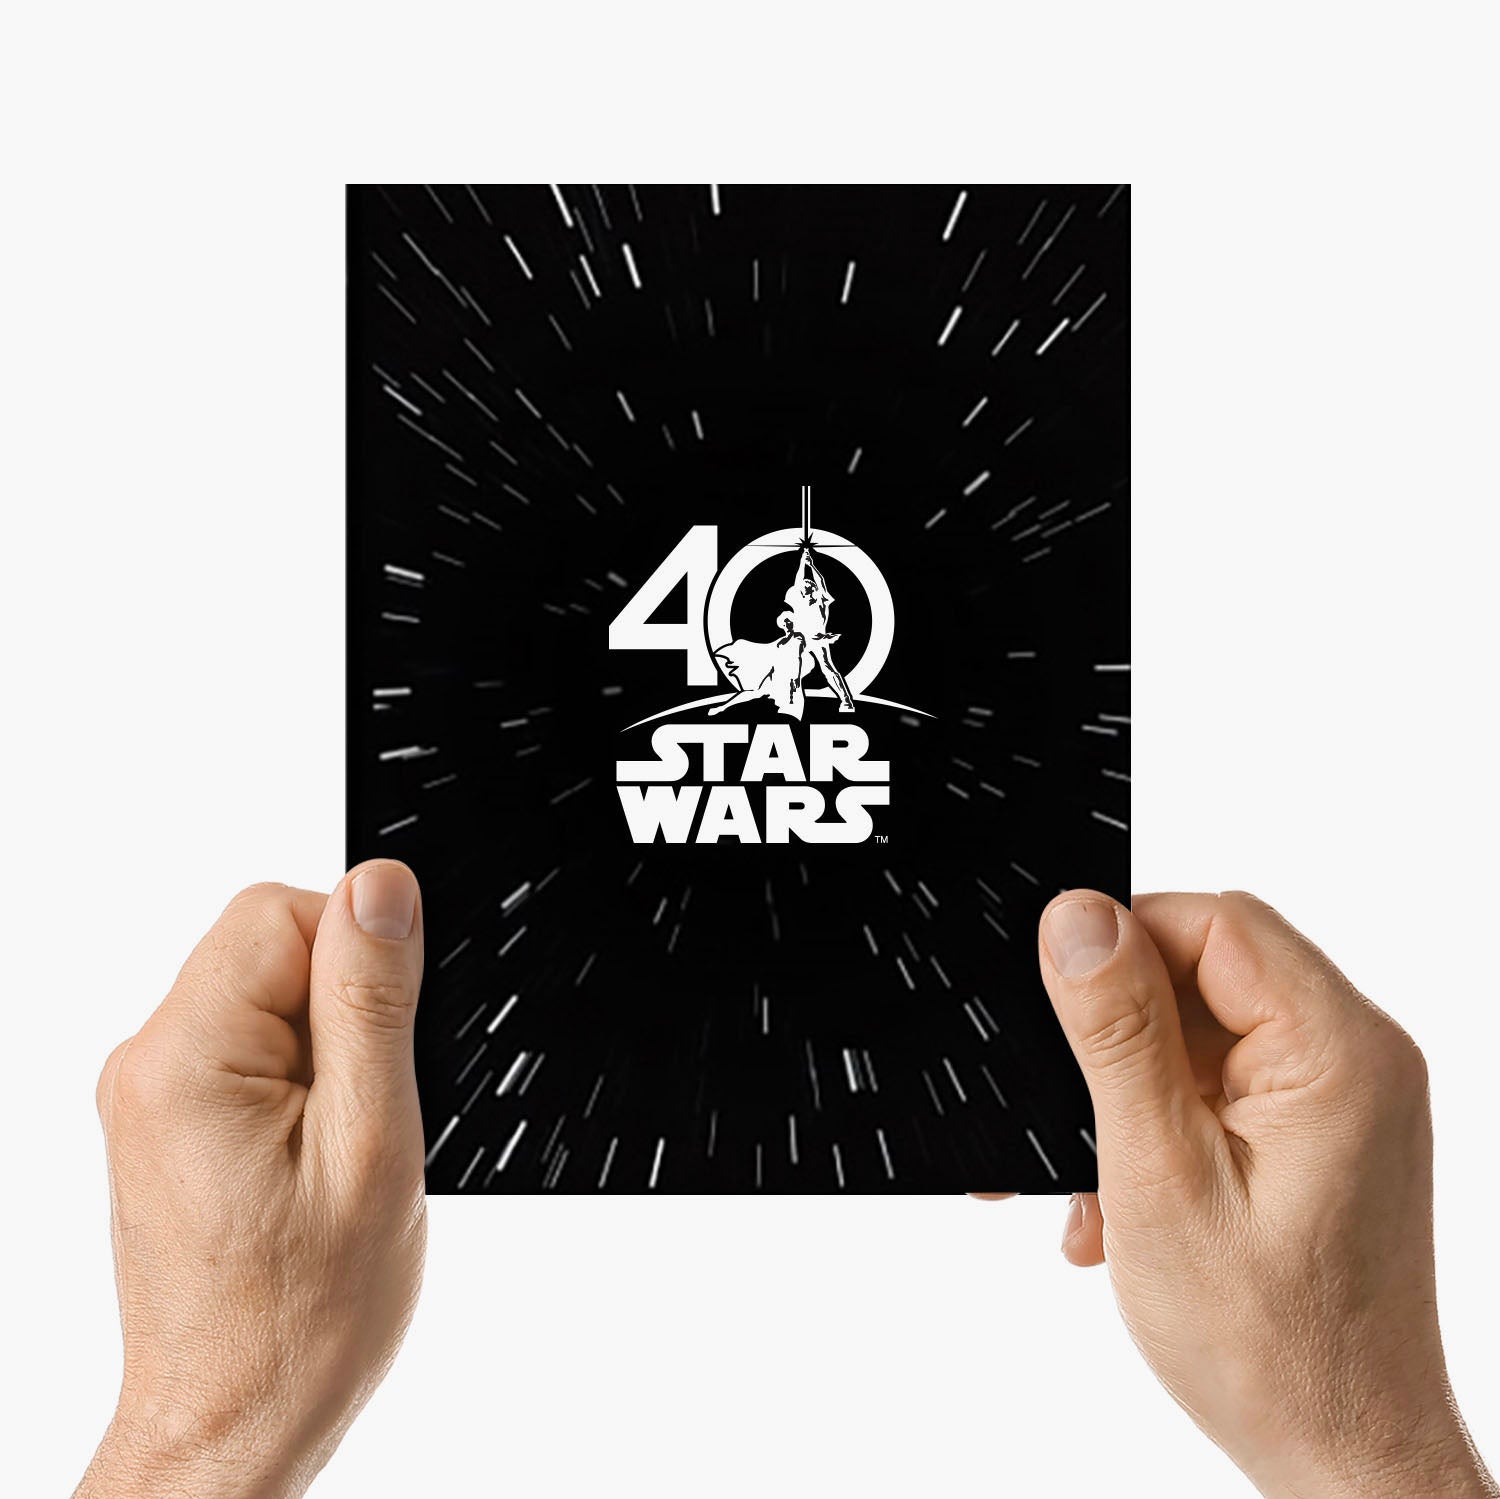 Star Wars 40th Anniversary Rare Stamp Set